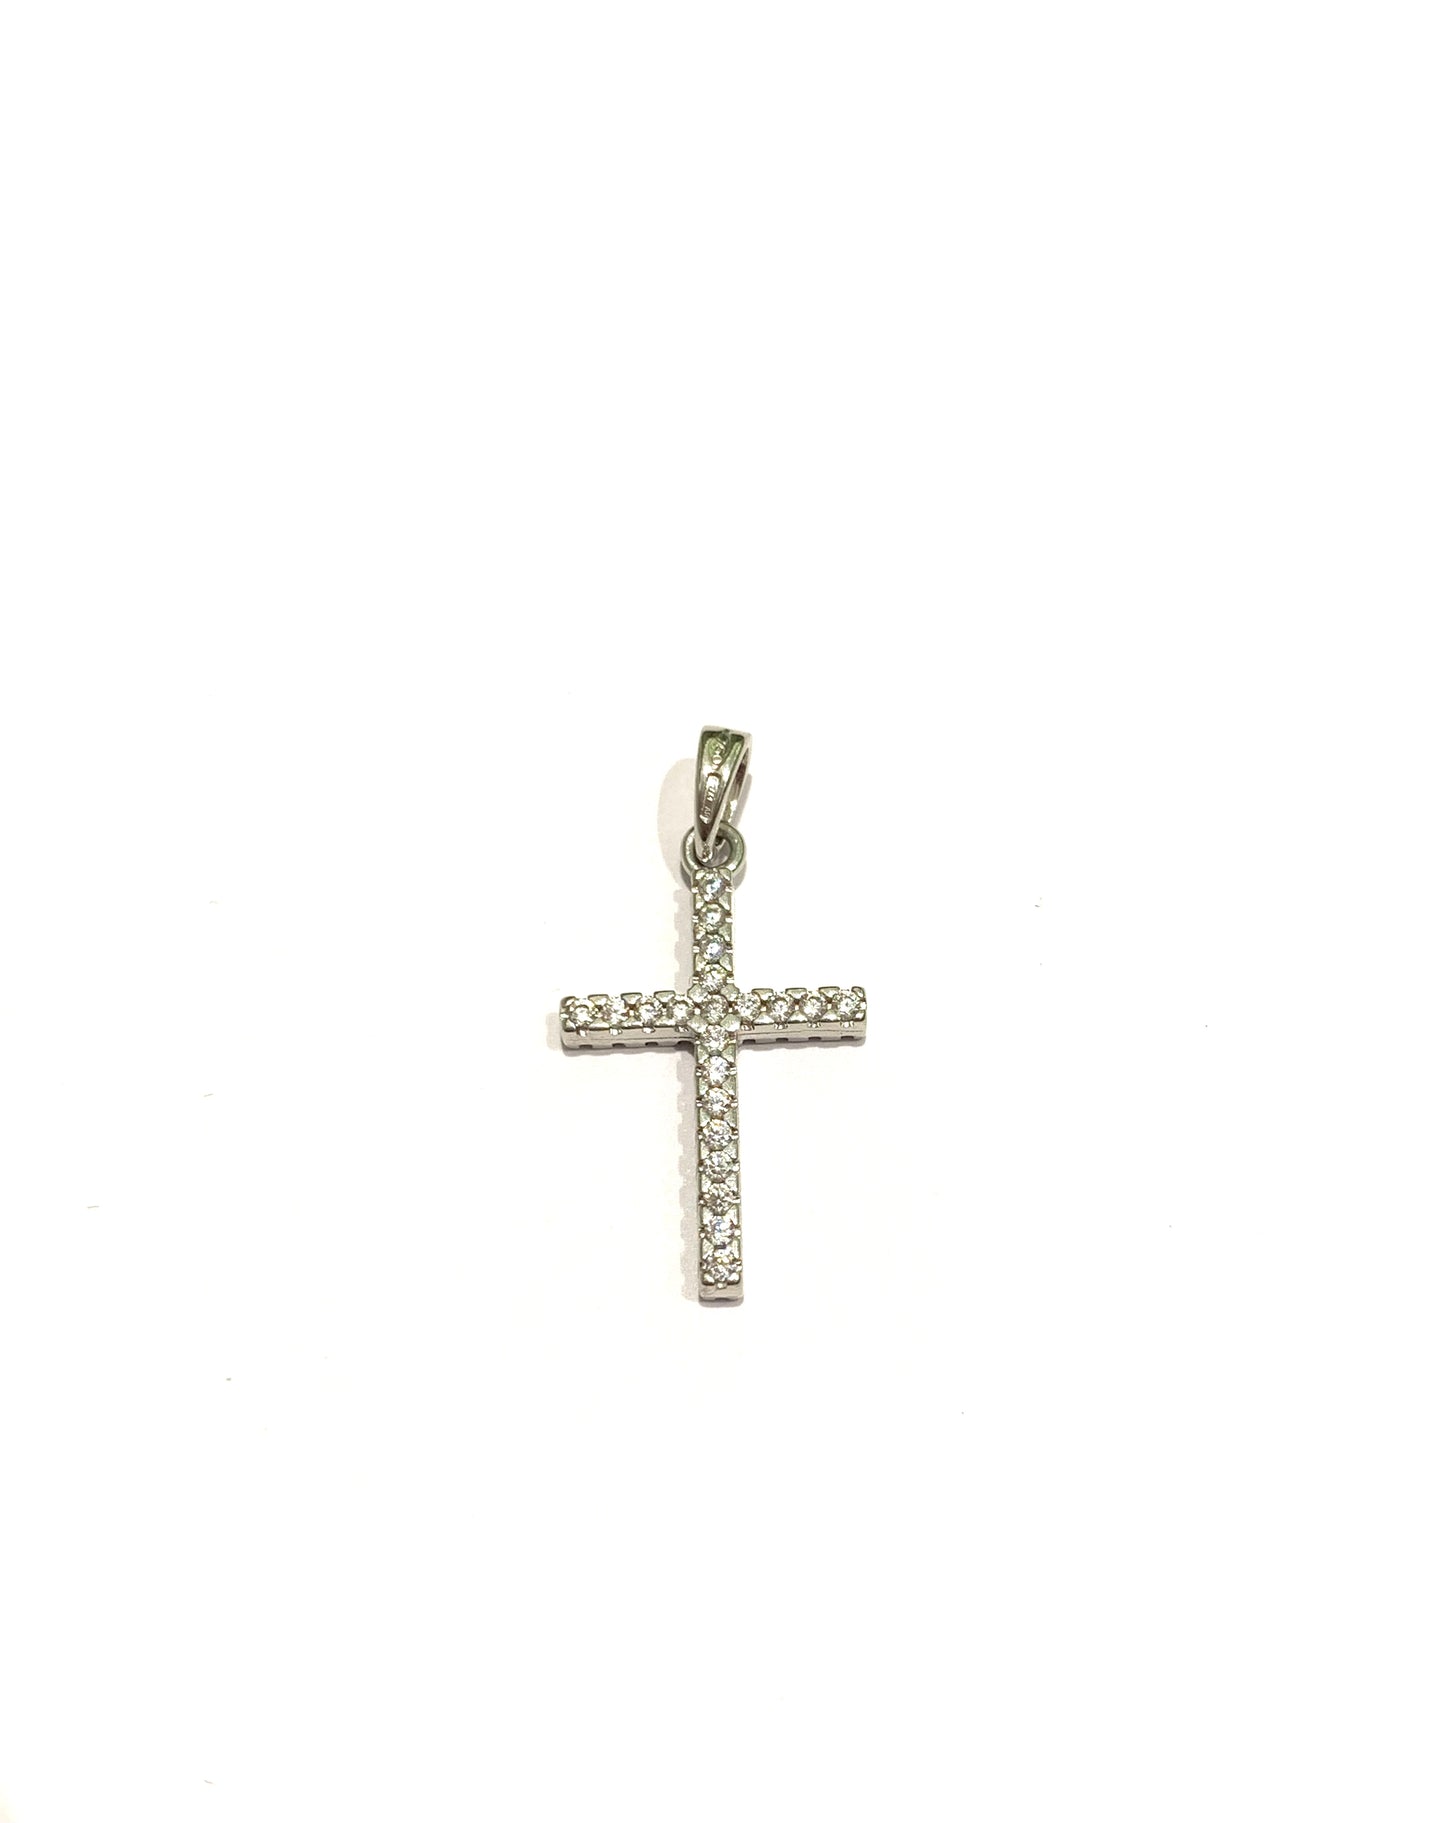 Ciondolo per collana in oro bianco 18kt con croce ricoperta da zirconi da entrambi i lati.  Dimensione 1,3x2,5 cm.